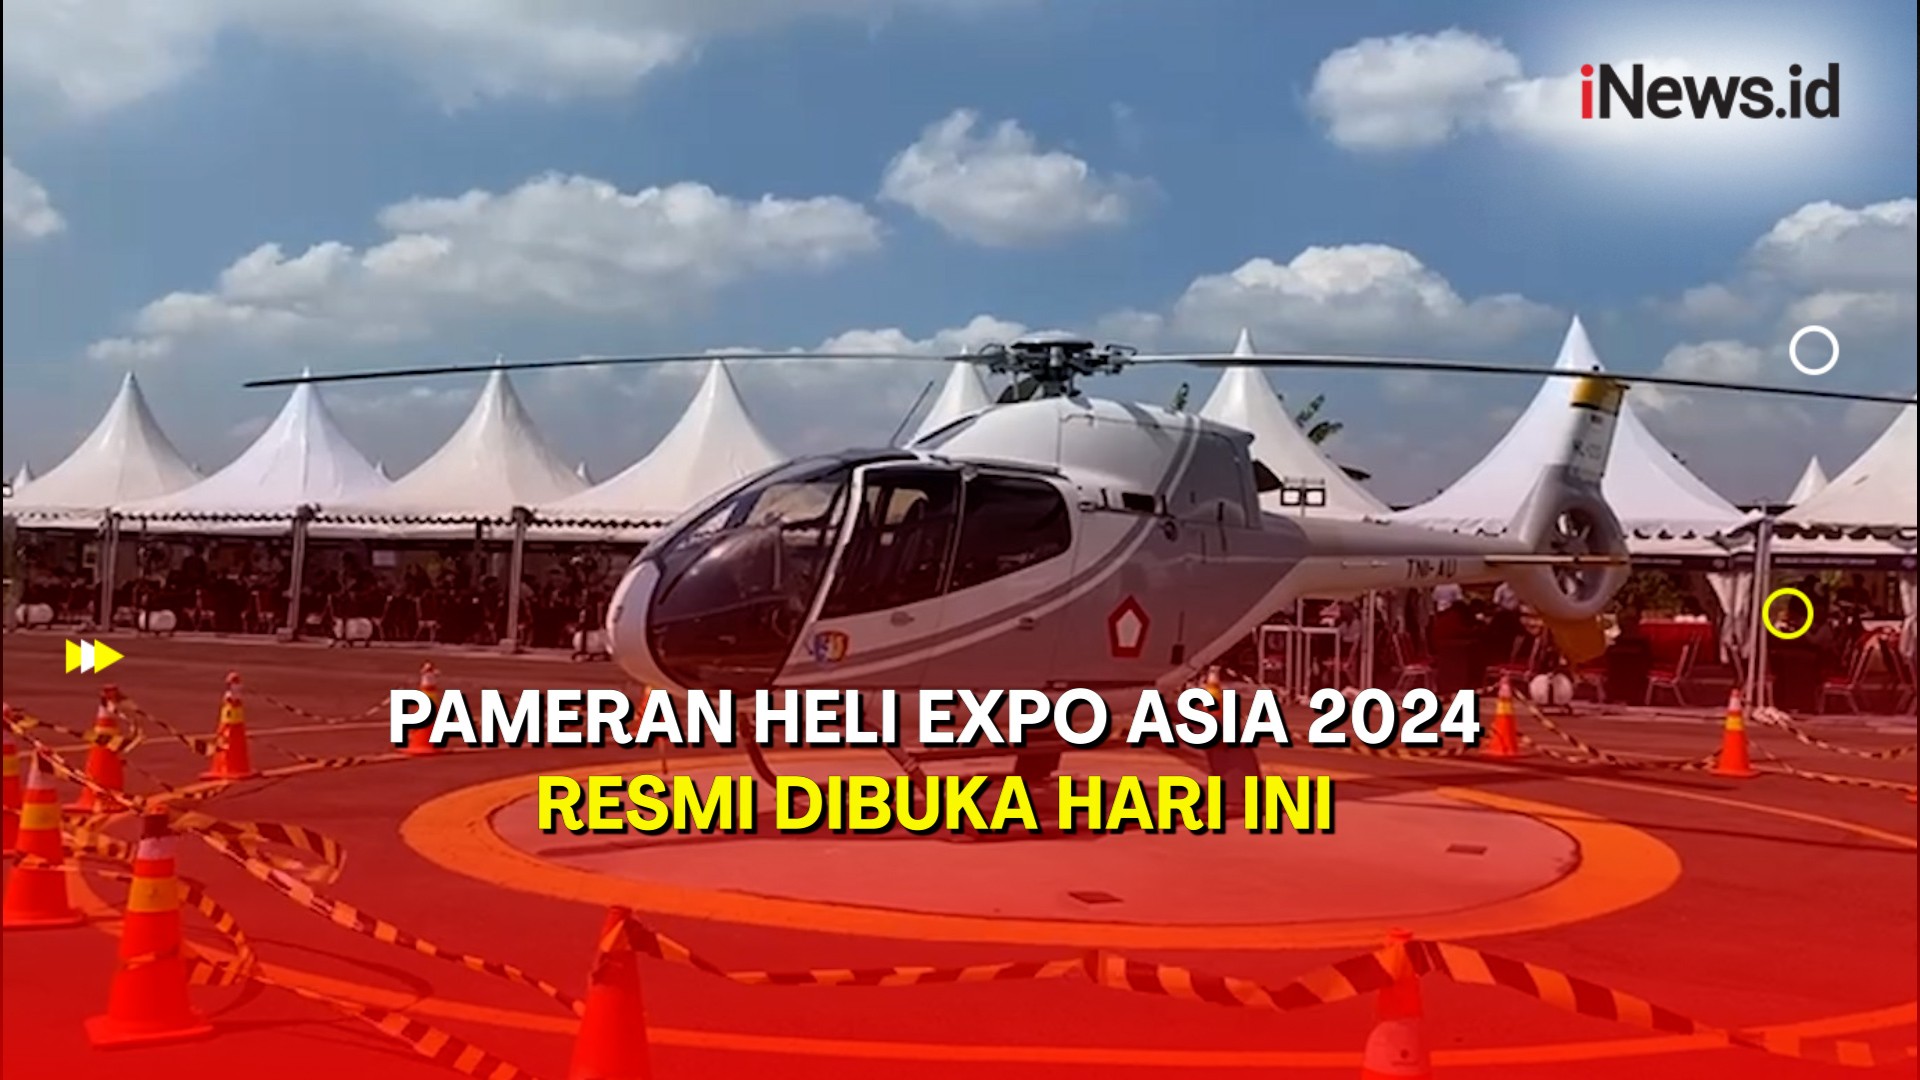 Pameran Heli Expo Asia 2024 Resmi Dibuka, Diikuti 30 Peserta Mancanegara